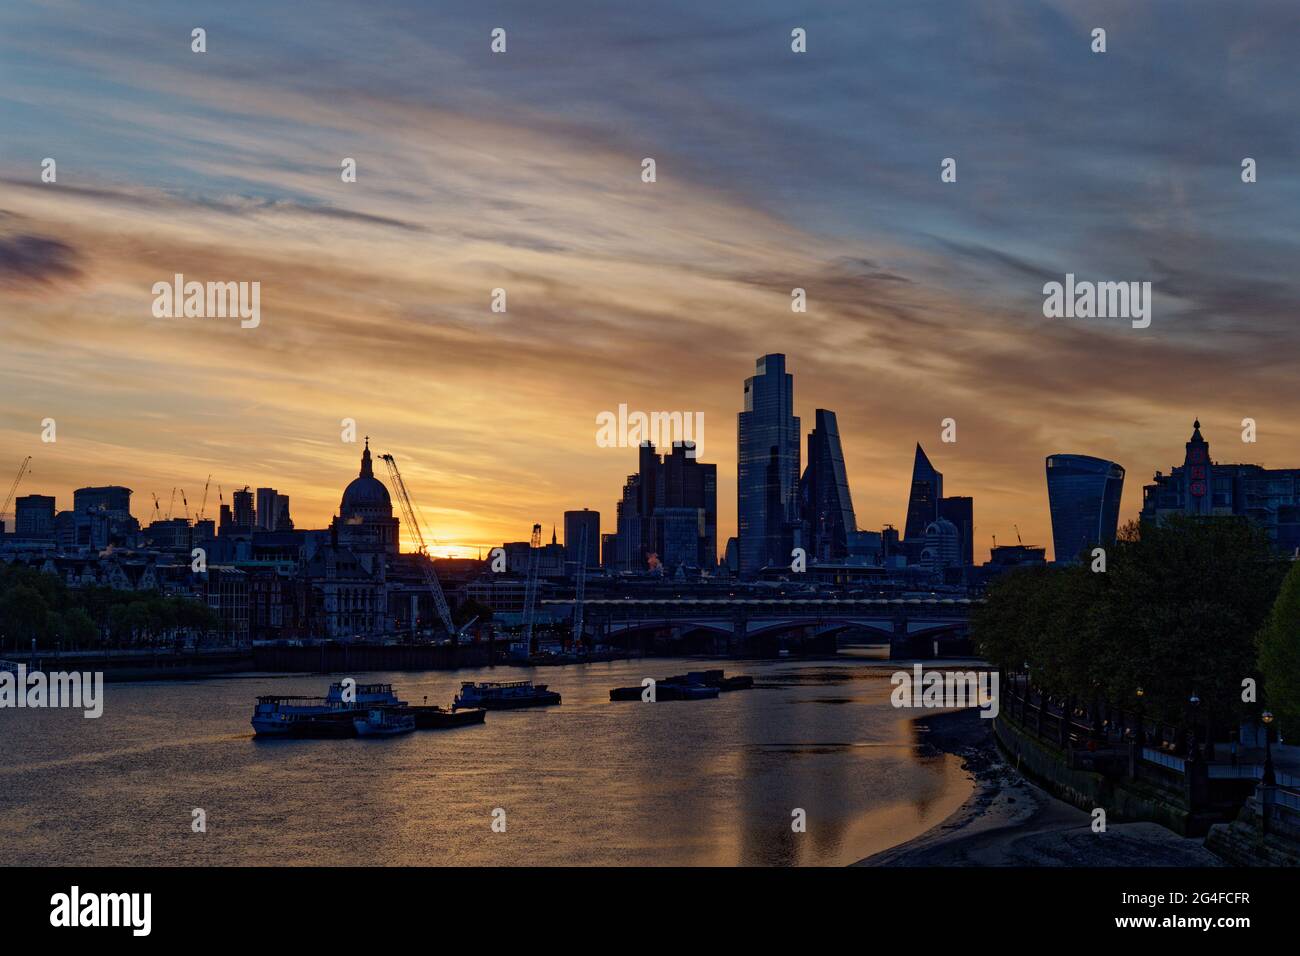 La luce dell'alba sul Tamigi a Londra, in Inghilterra, rivela il centro finanziario della città e i molti nuovi edifici di alto livello Foto Stock